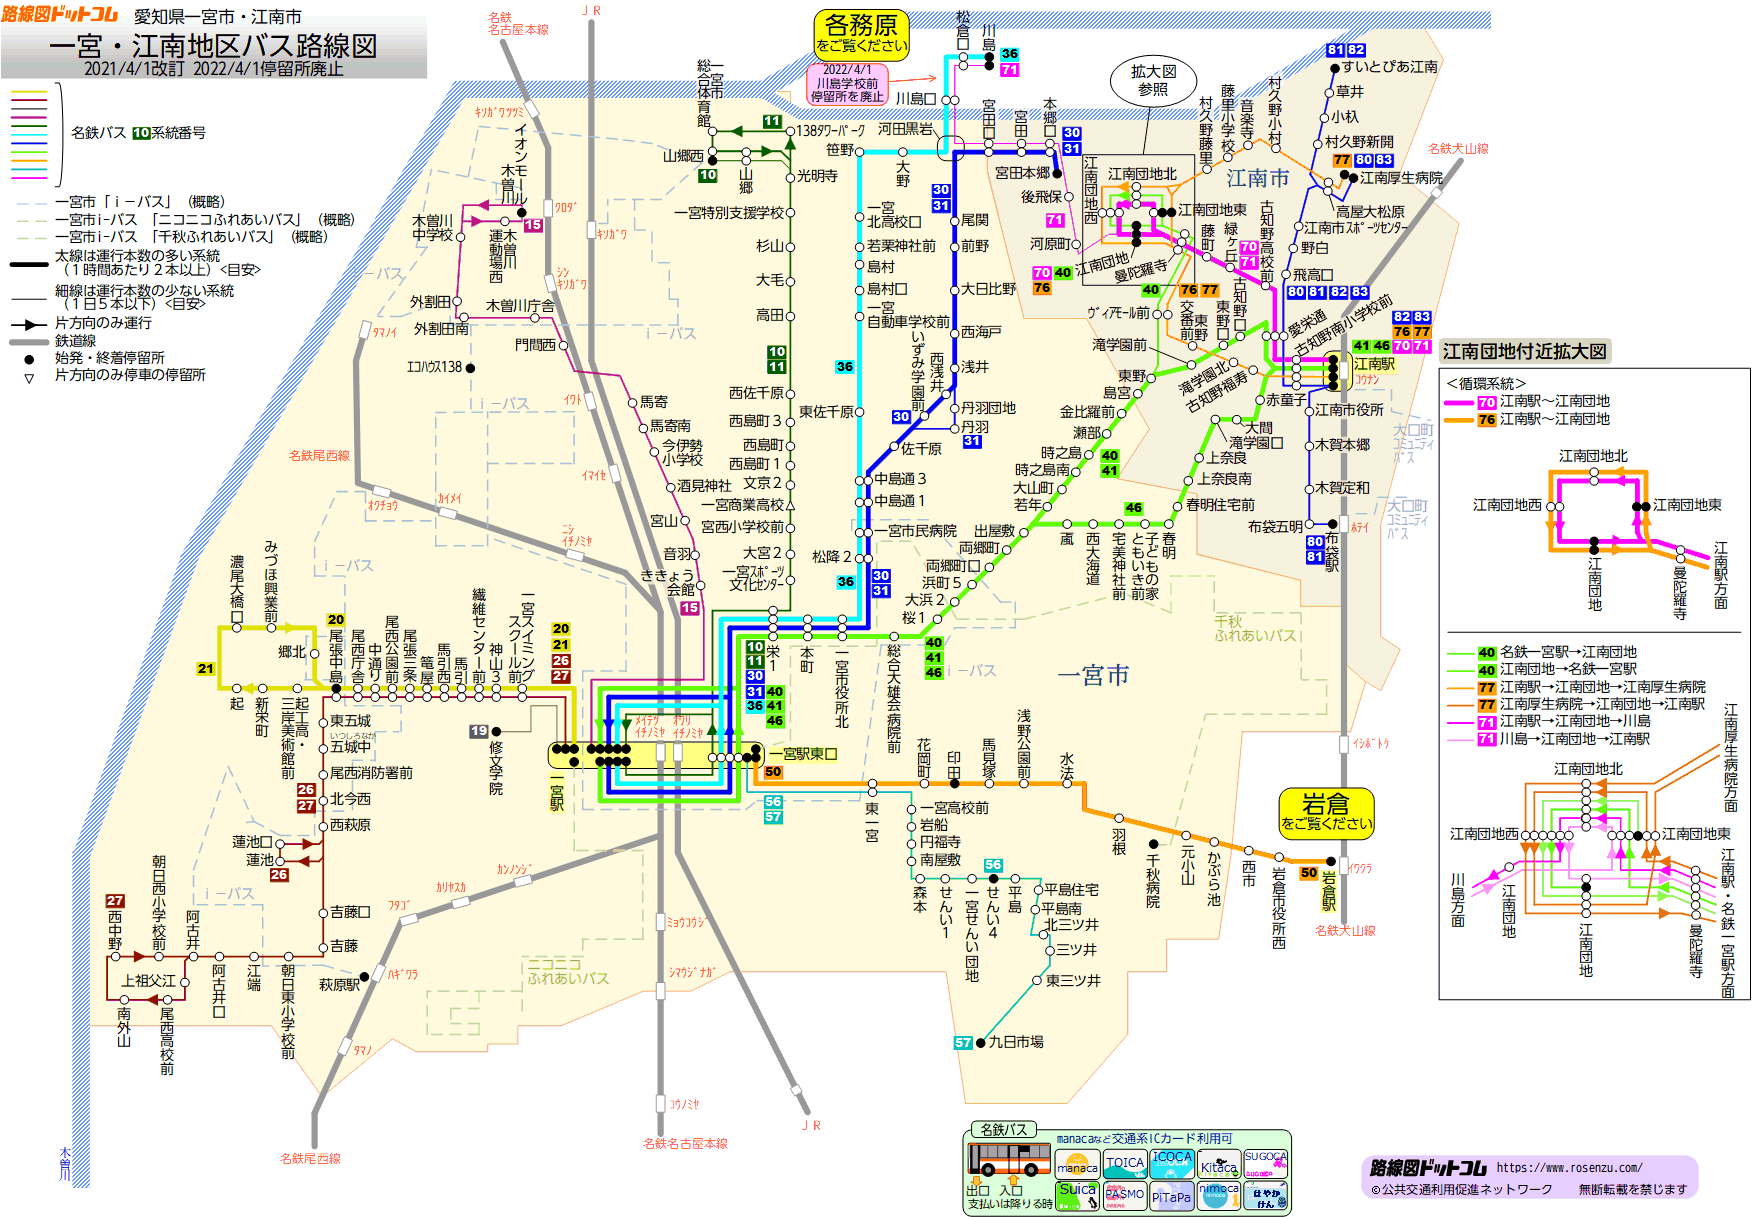 路線図ドットコム 愛知県 一宮 江南地区バス路線図